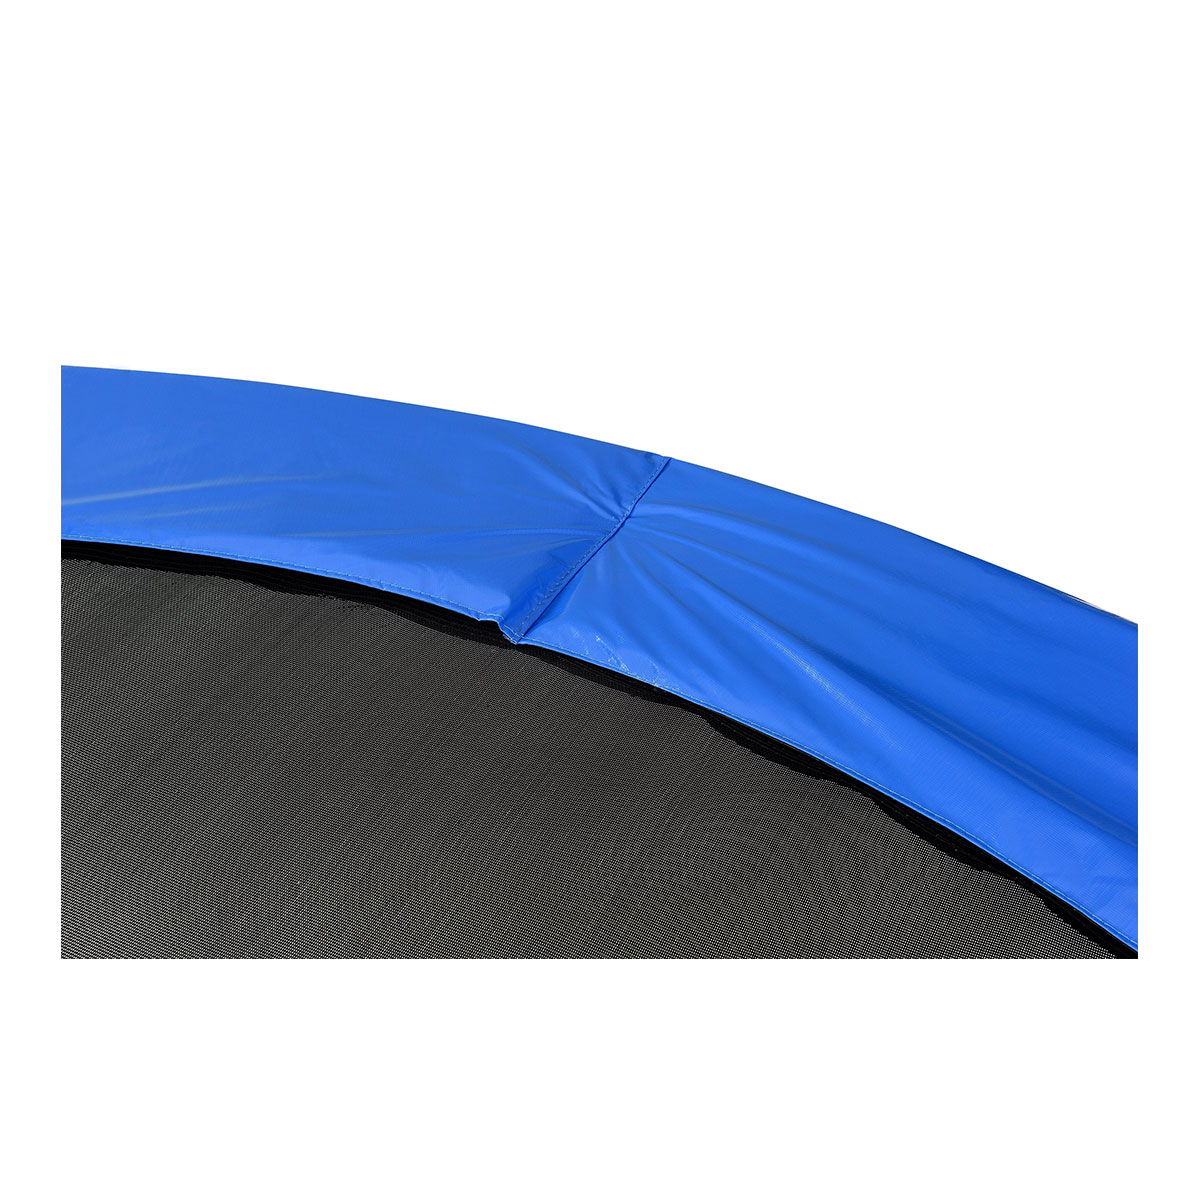 Outdoor Trampolin blau - Durchmesser 244 cm 